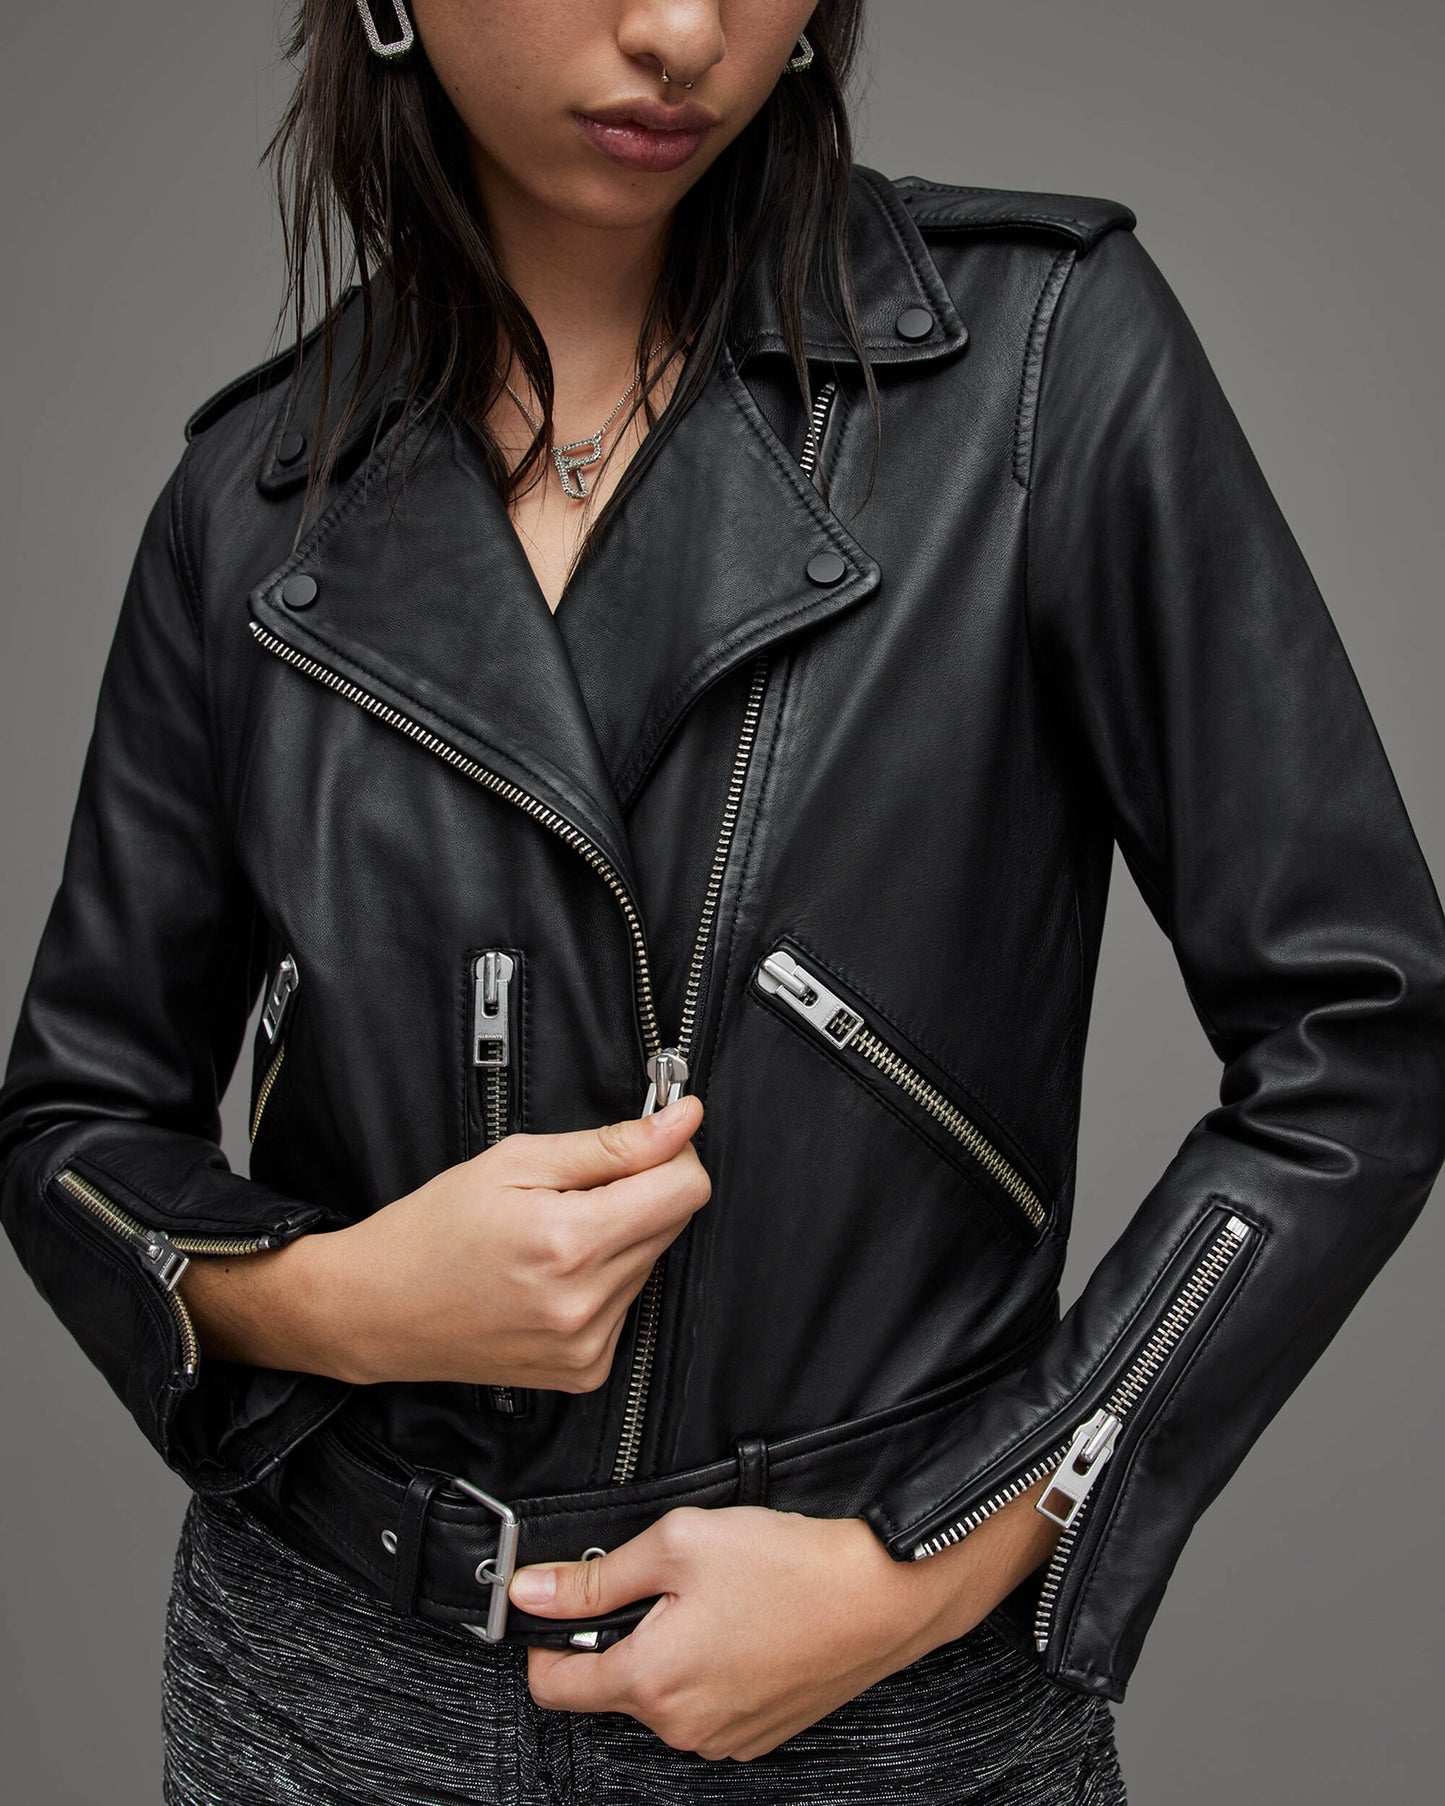 Women's Biker Leather Jacket In Black With Belt